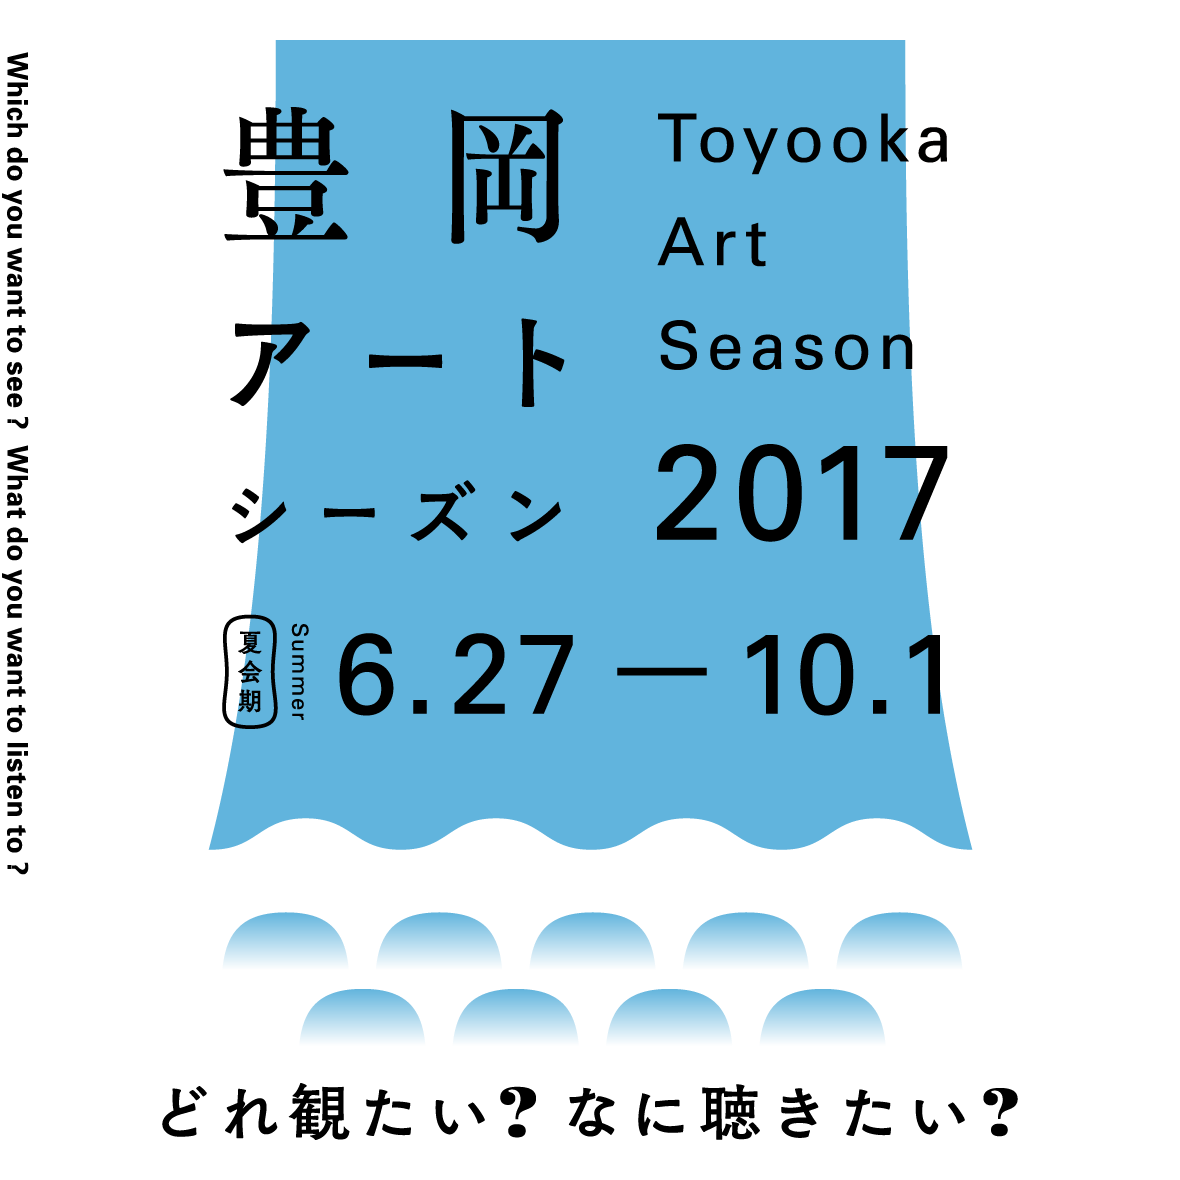 Toyooka Art Season 2017 SUMMER